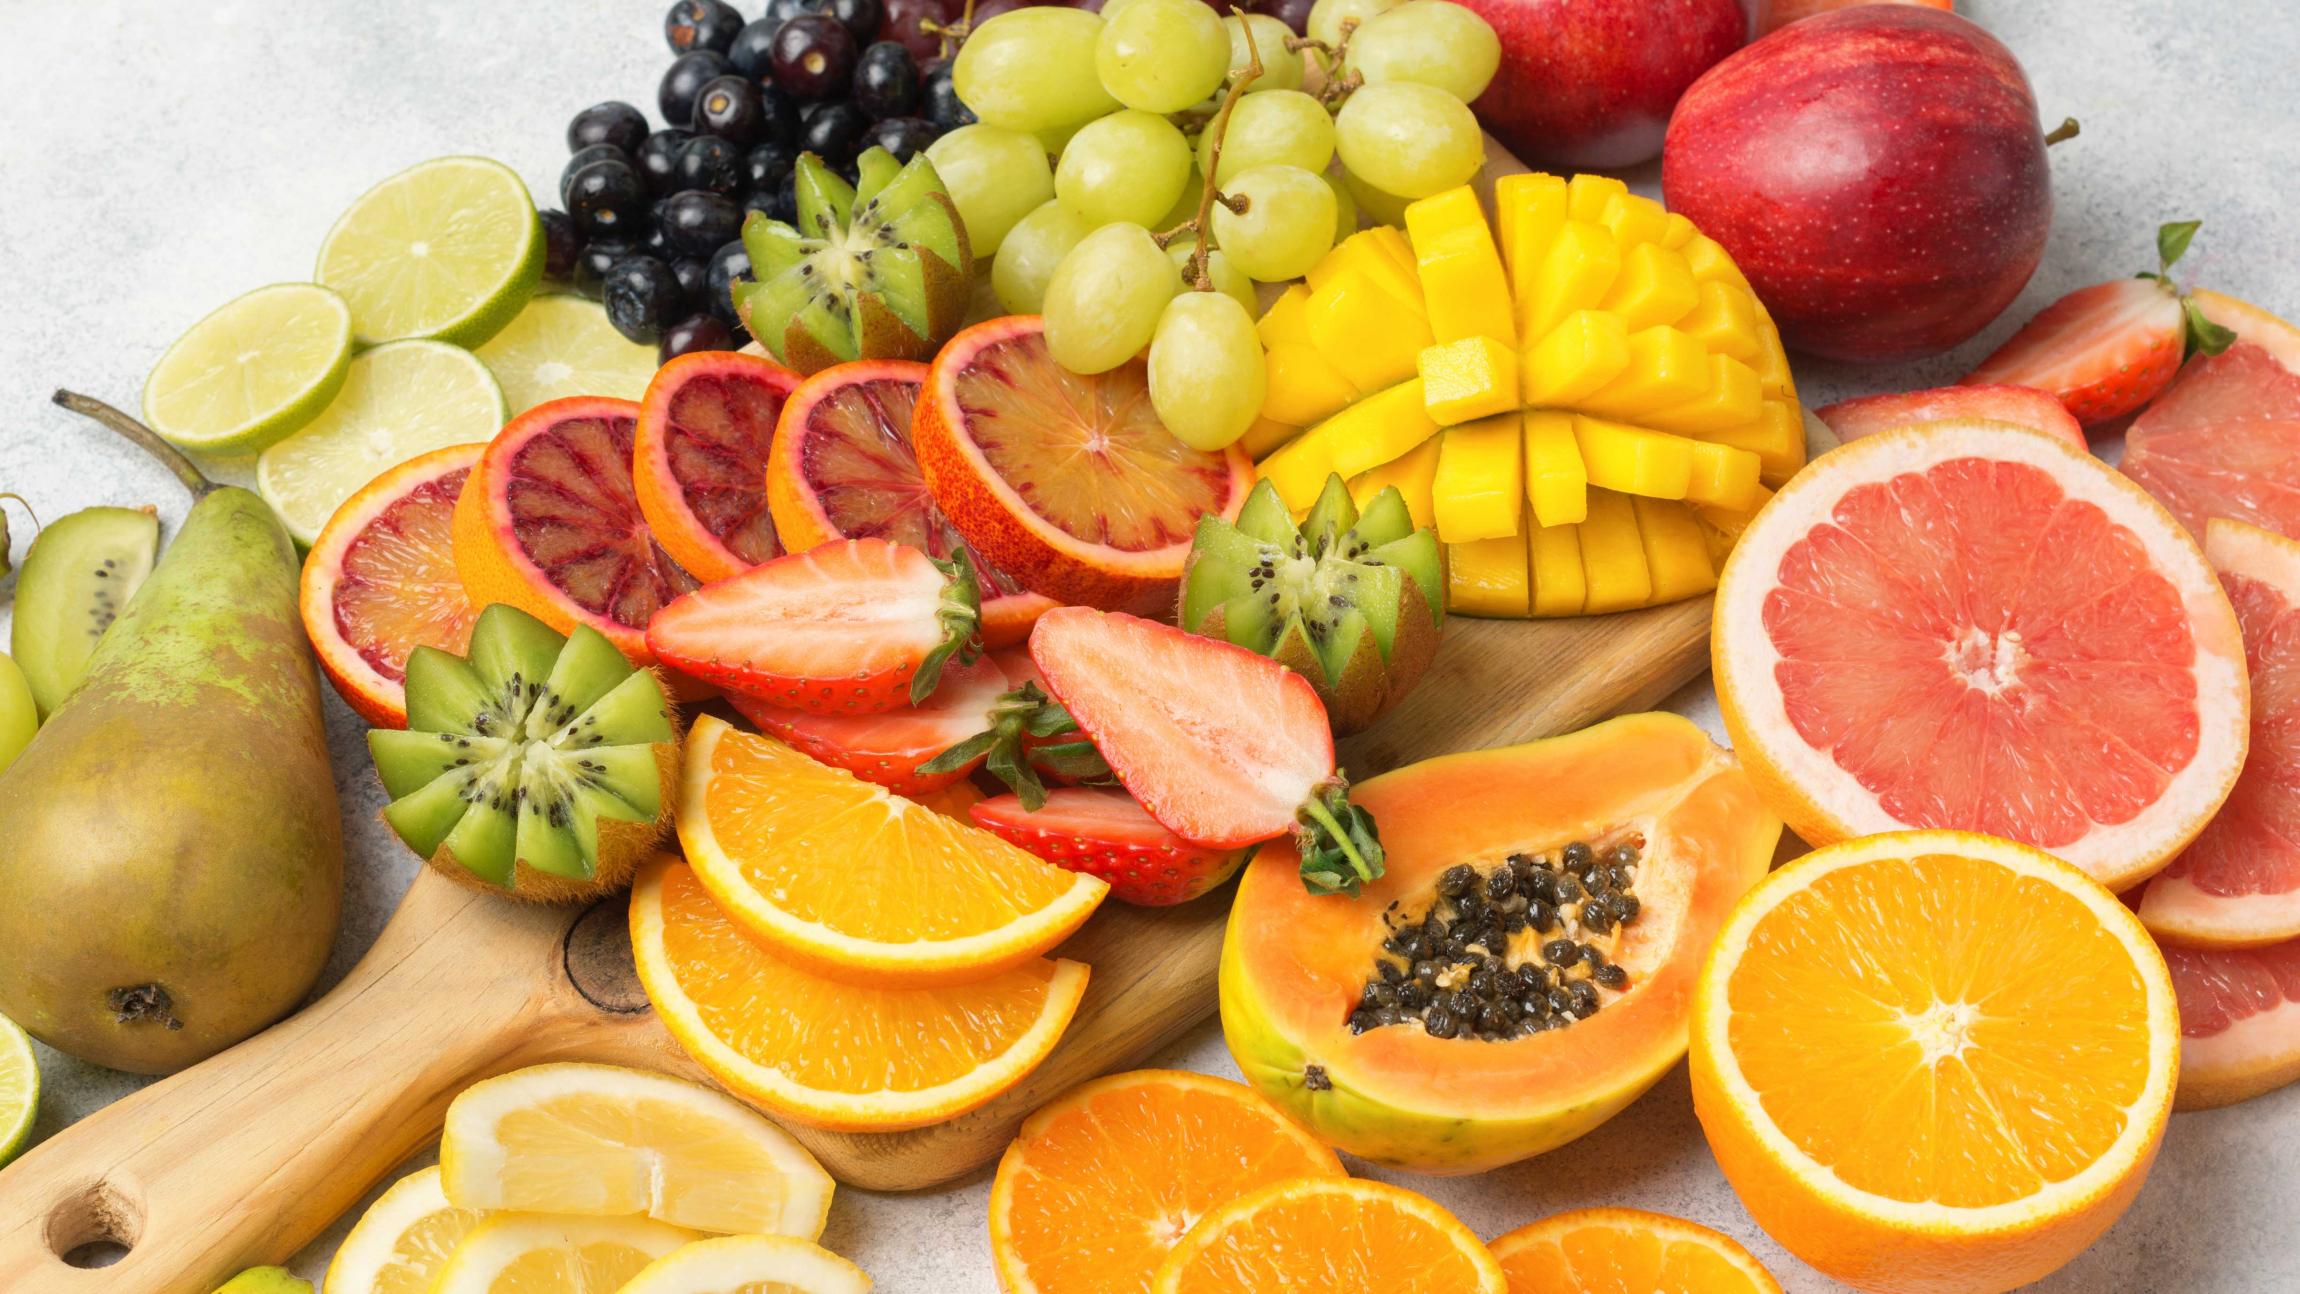 Frugtfad fyldt med en masse forskellige frugter såsom vindruer, appelsiner, pærer og ananas